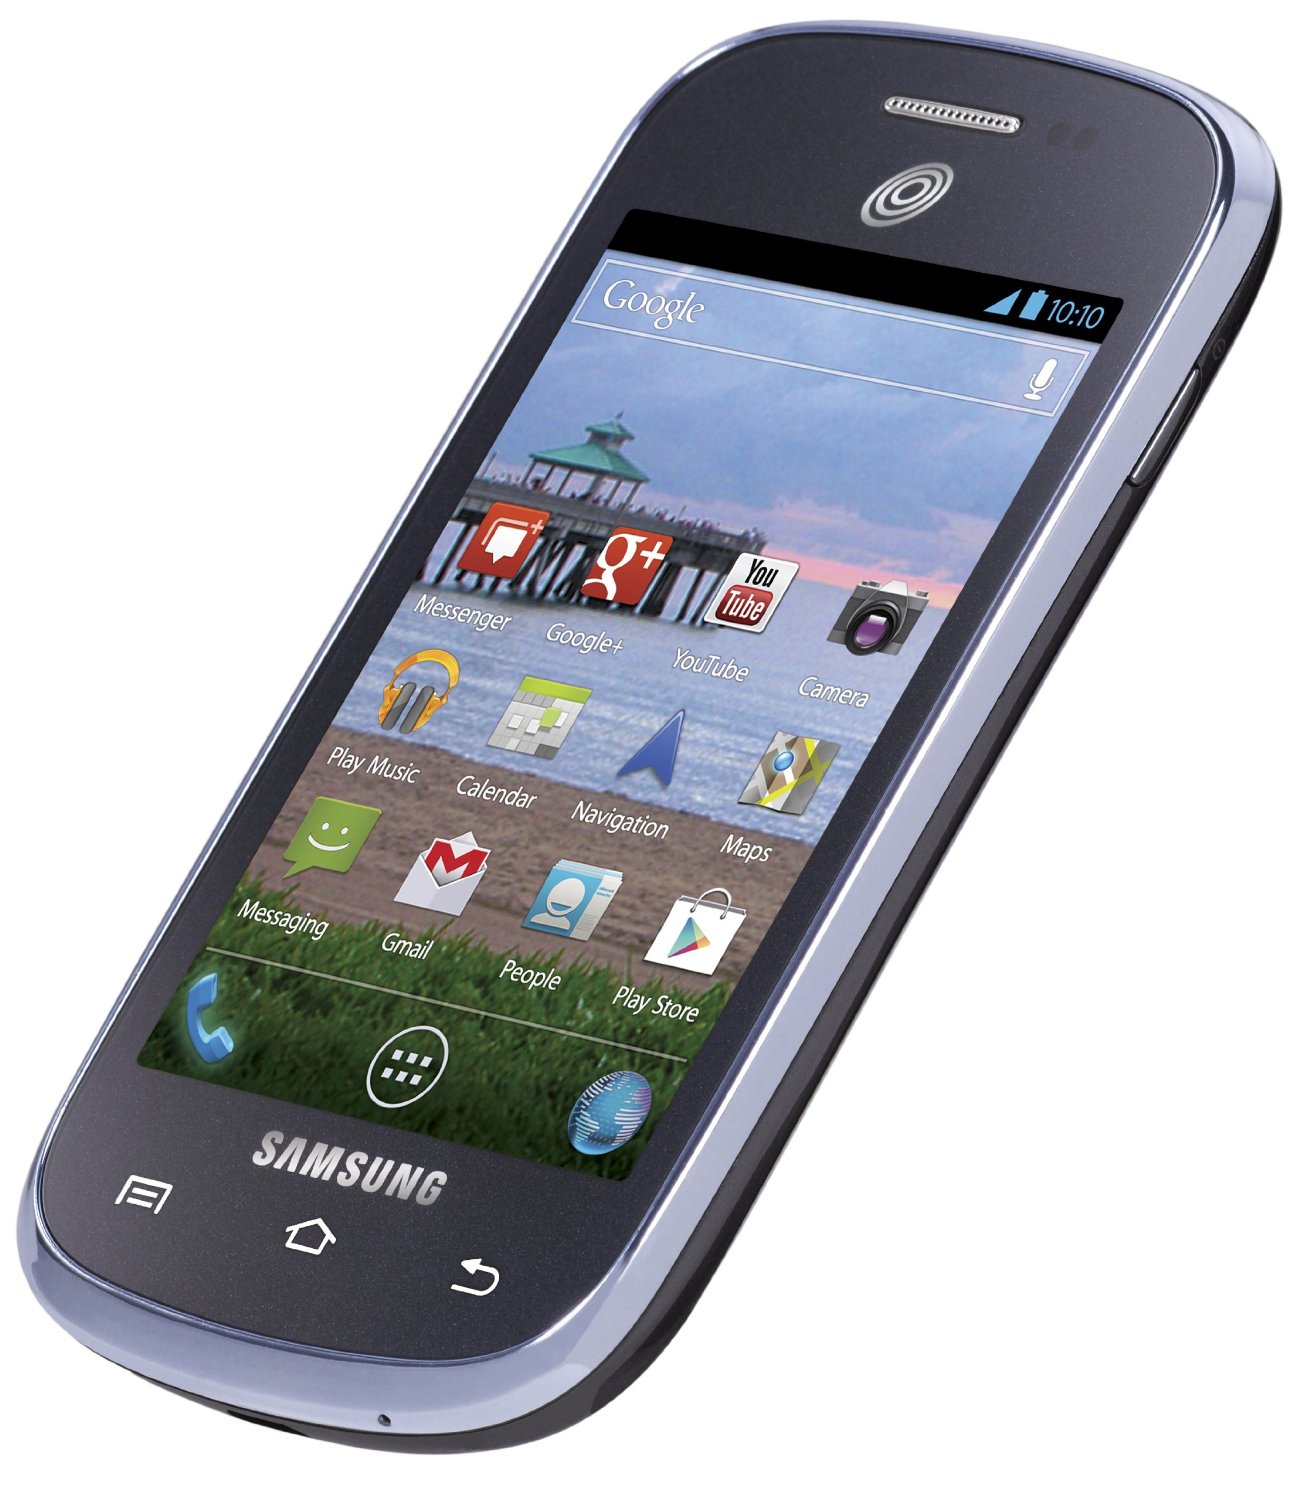 Leuke beltonen voor Samsung Galaxy Centura gratis.